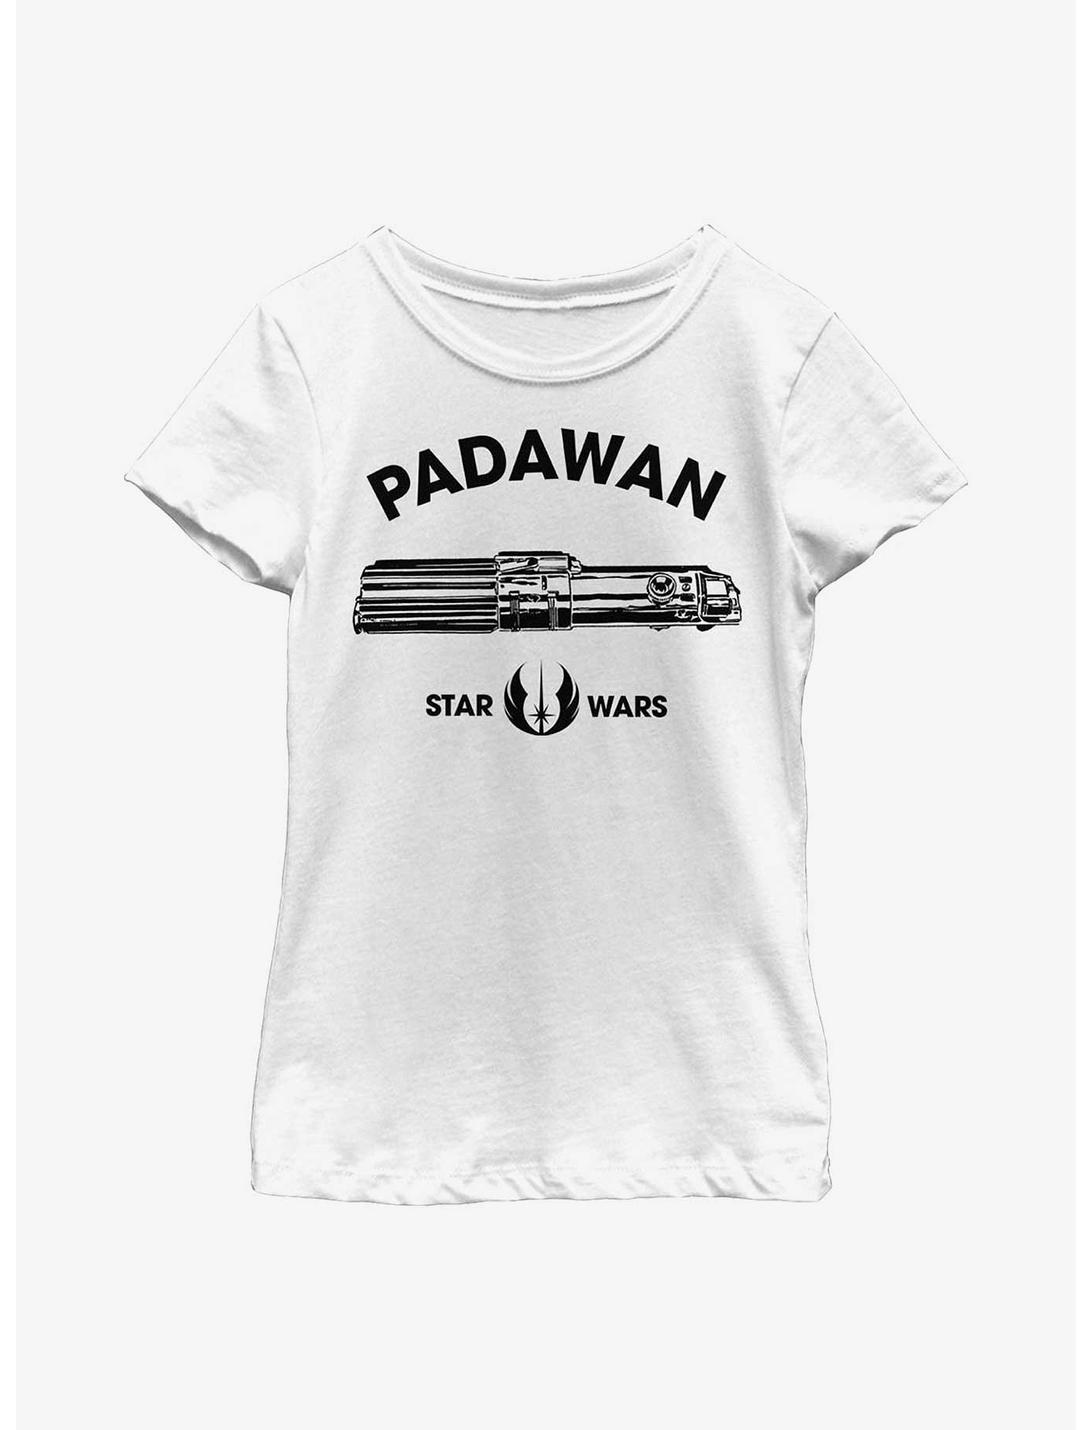 Star Wars Padawan Lightsaber Youth Girls T-Shirt, WHITE, hi-res